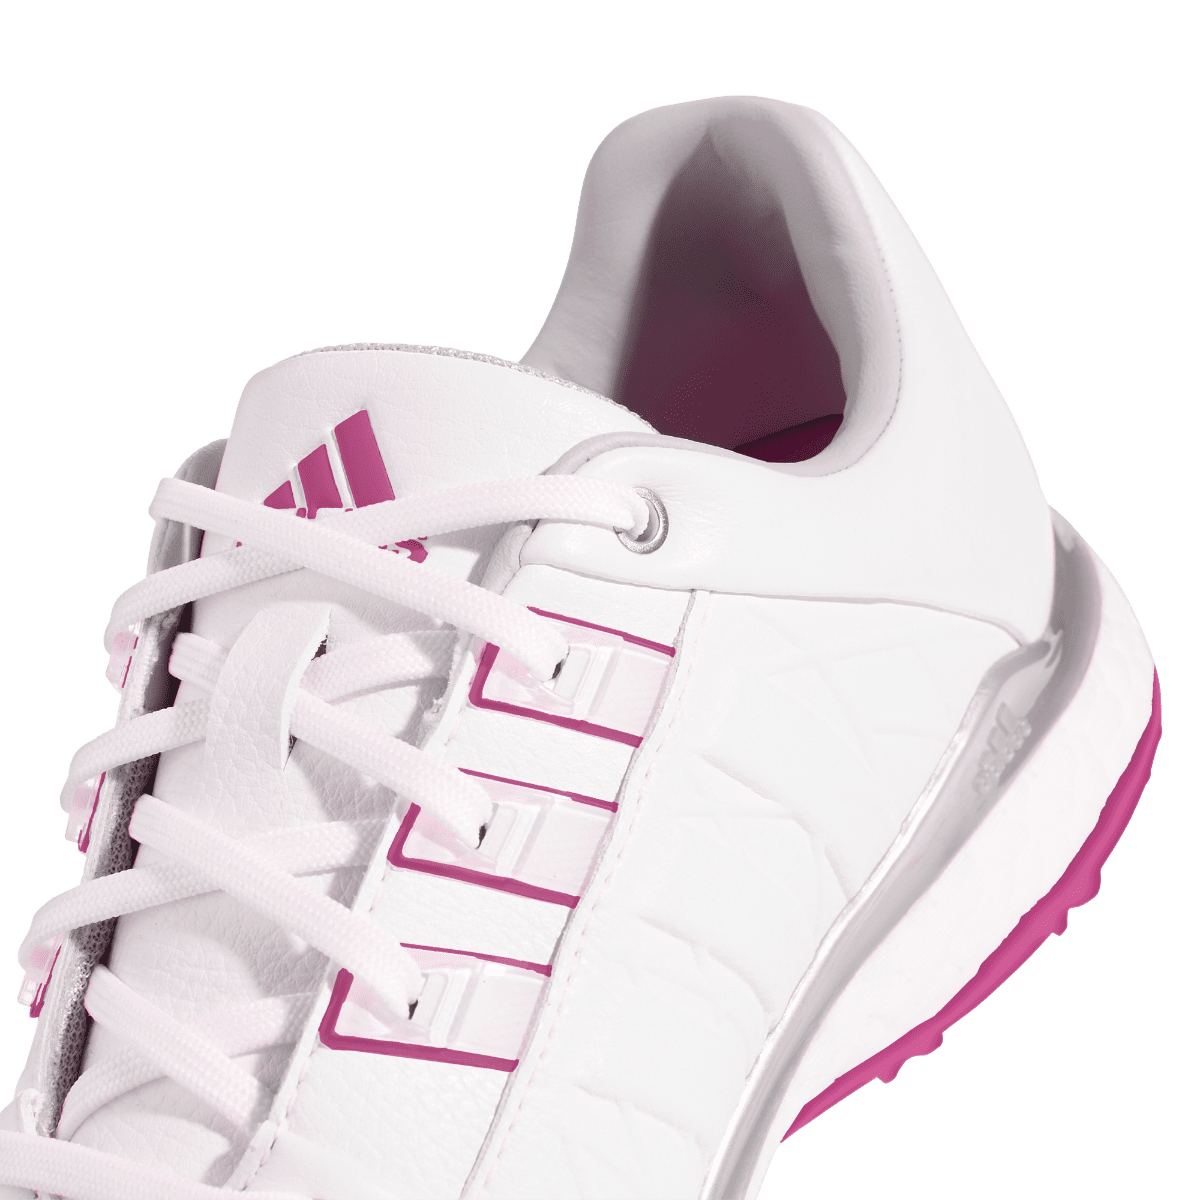 adidas Ladies Tour360 XT Golf Shoes FW5641